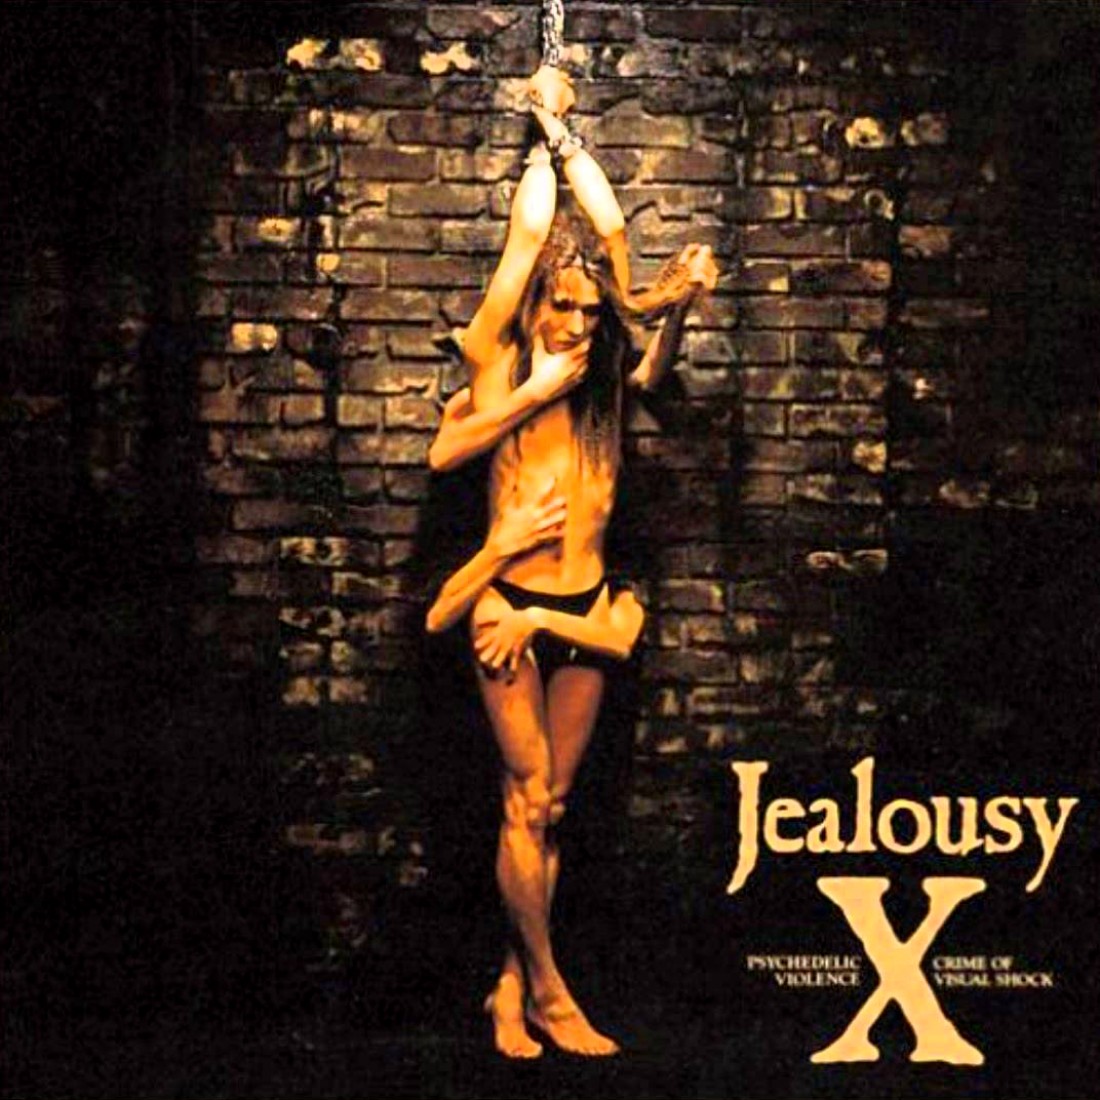 Jealousy / X